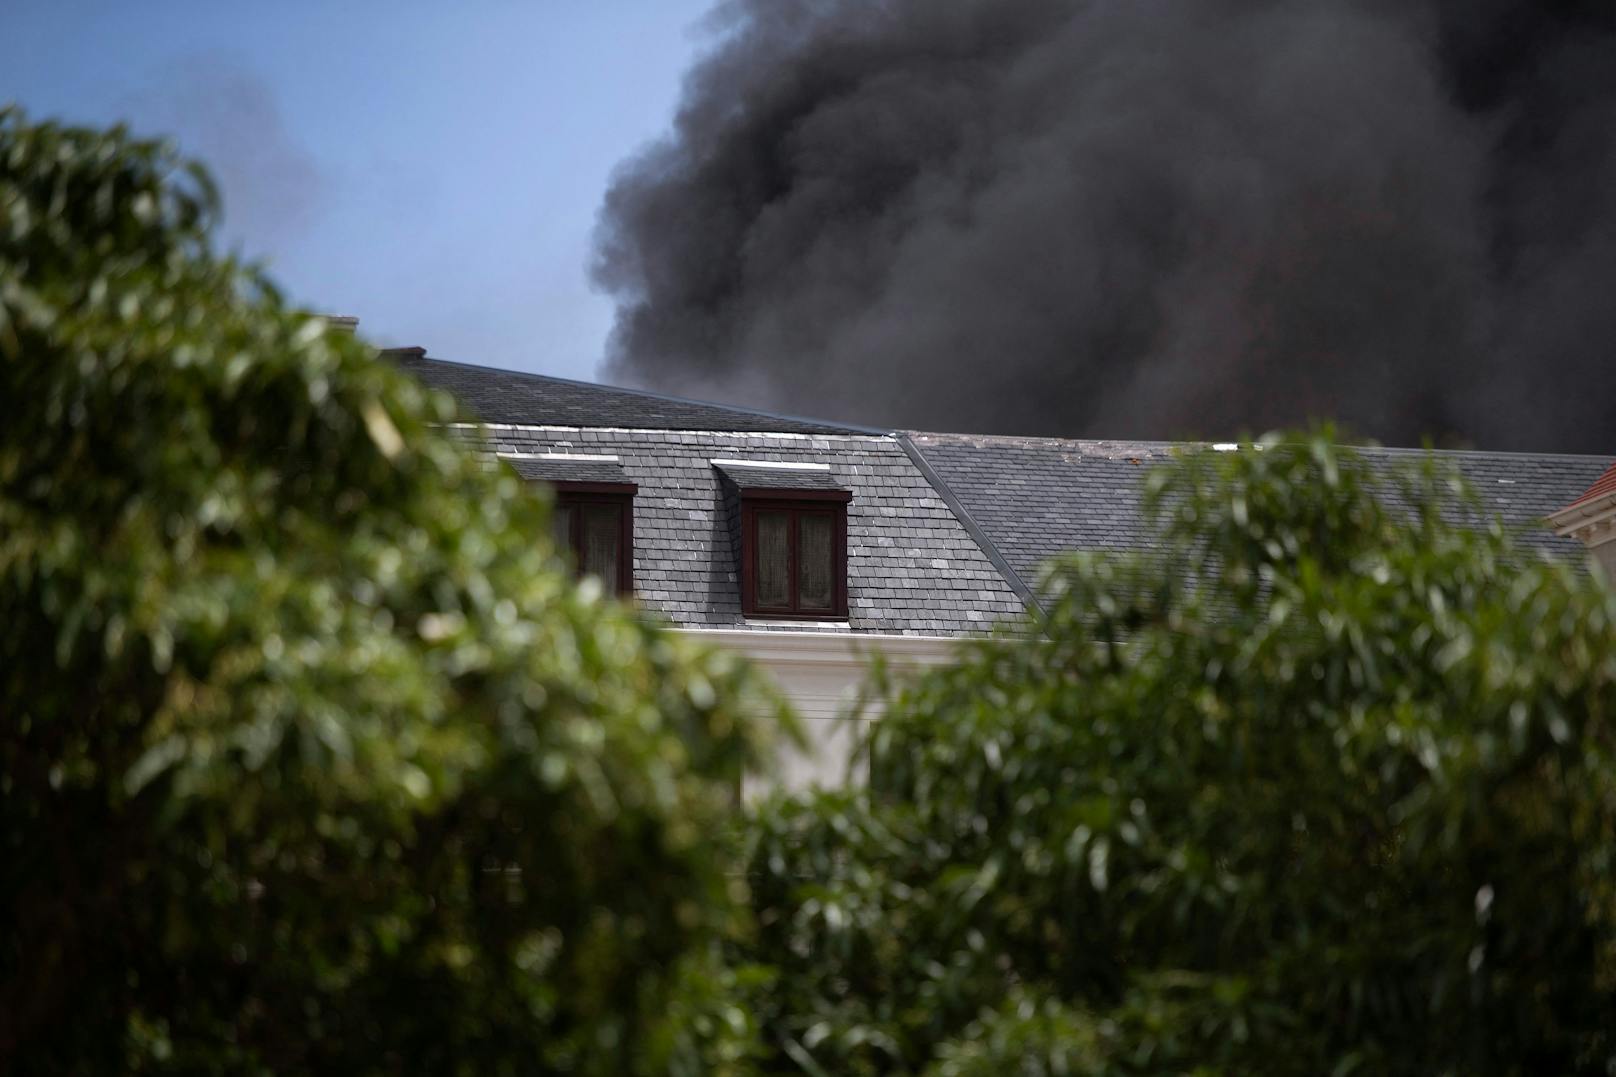 Das Parlament in Südafrika wurde bei einem Feuer schwer beschädigt. Die Bilder zum Durchklicken.